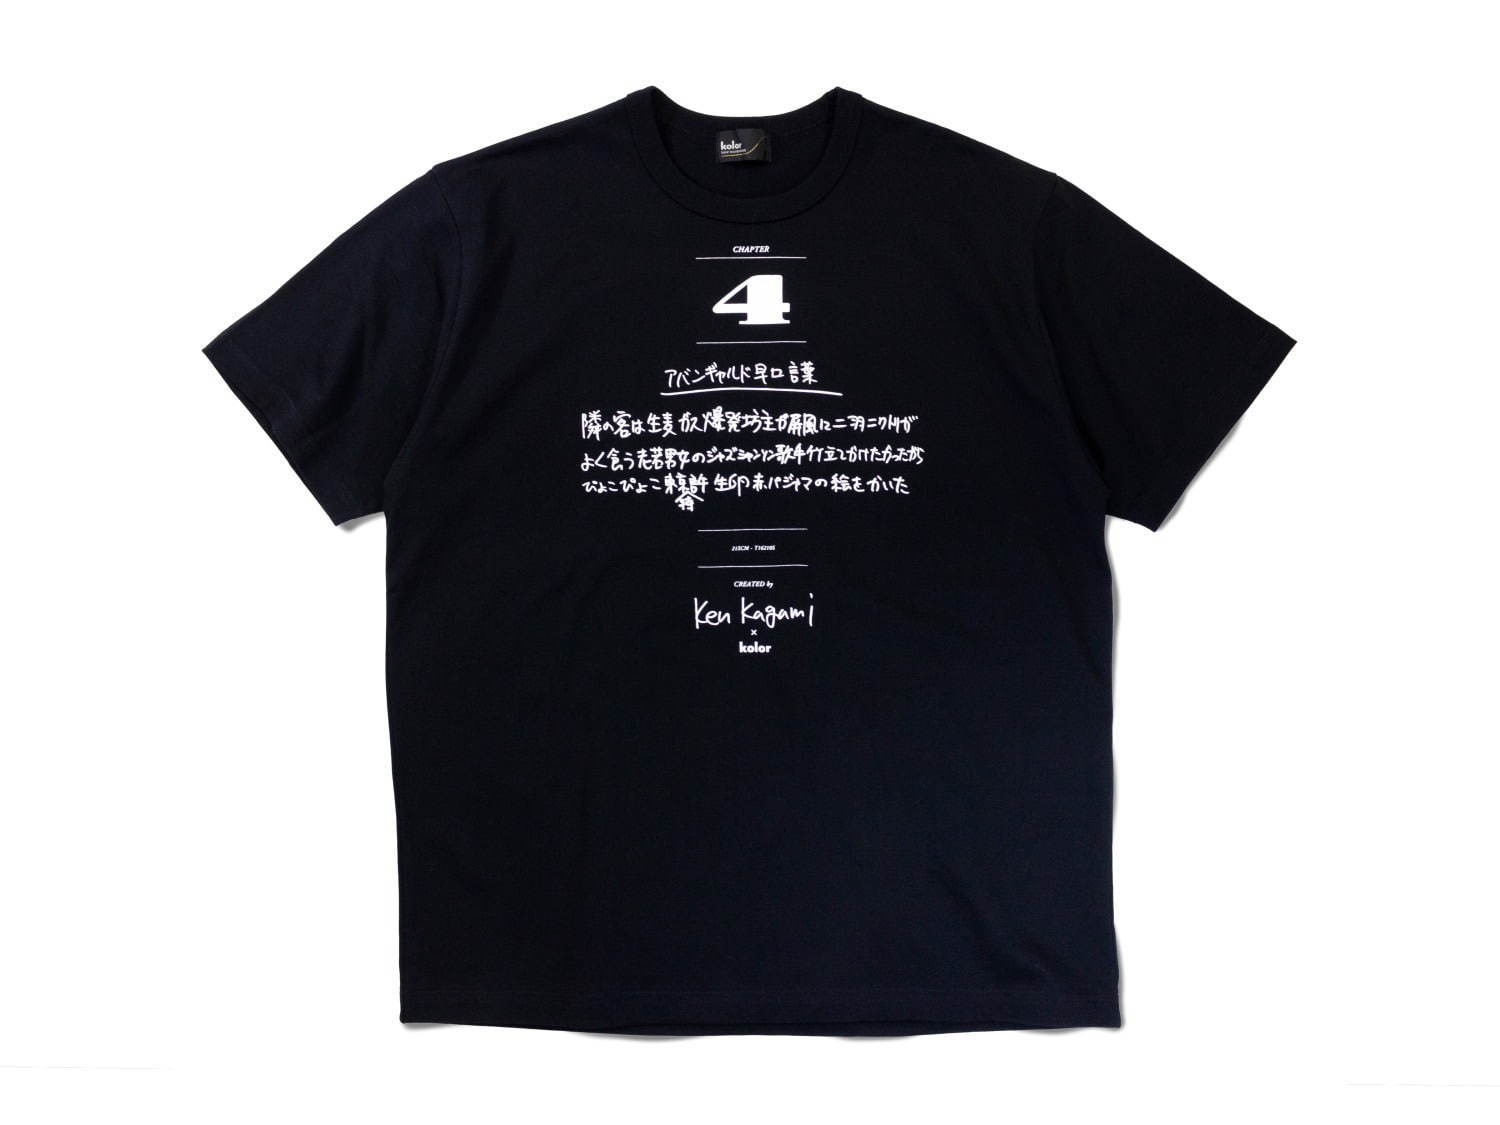 カラー×加賀美健のコラボTシャツ第2弾“アバンギャルド早口言葉”など